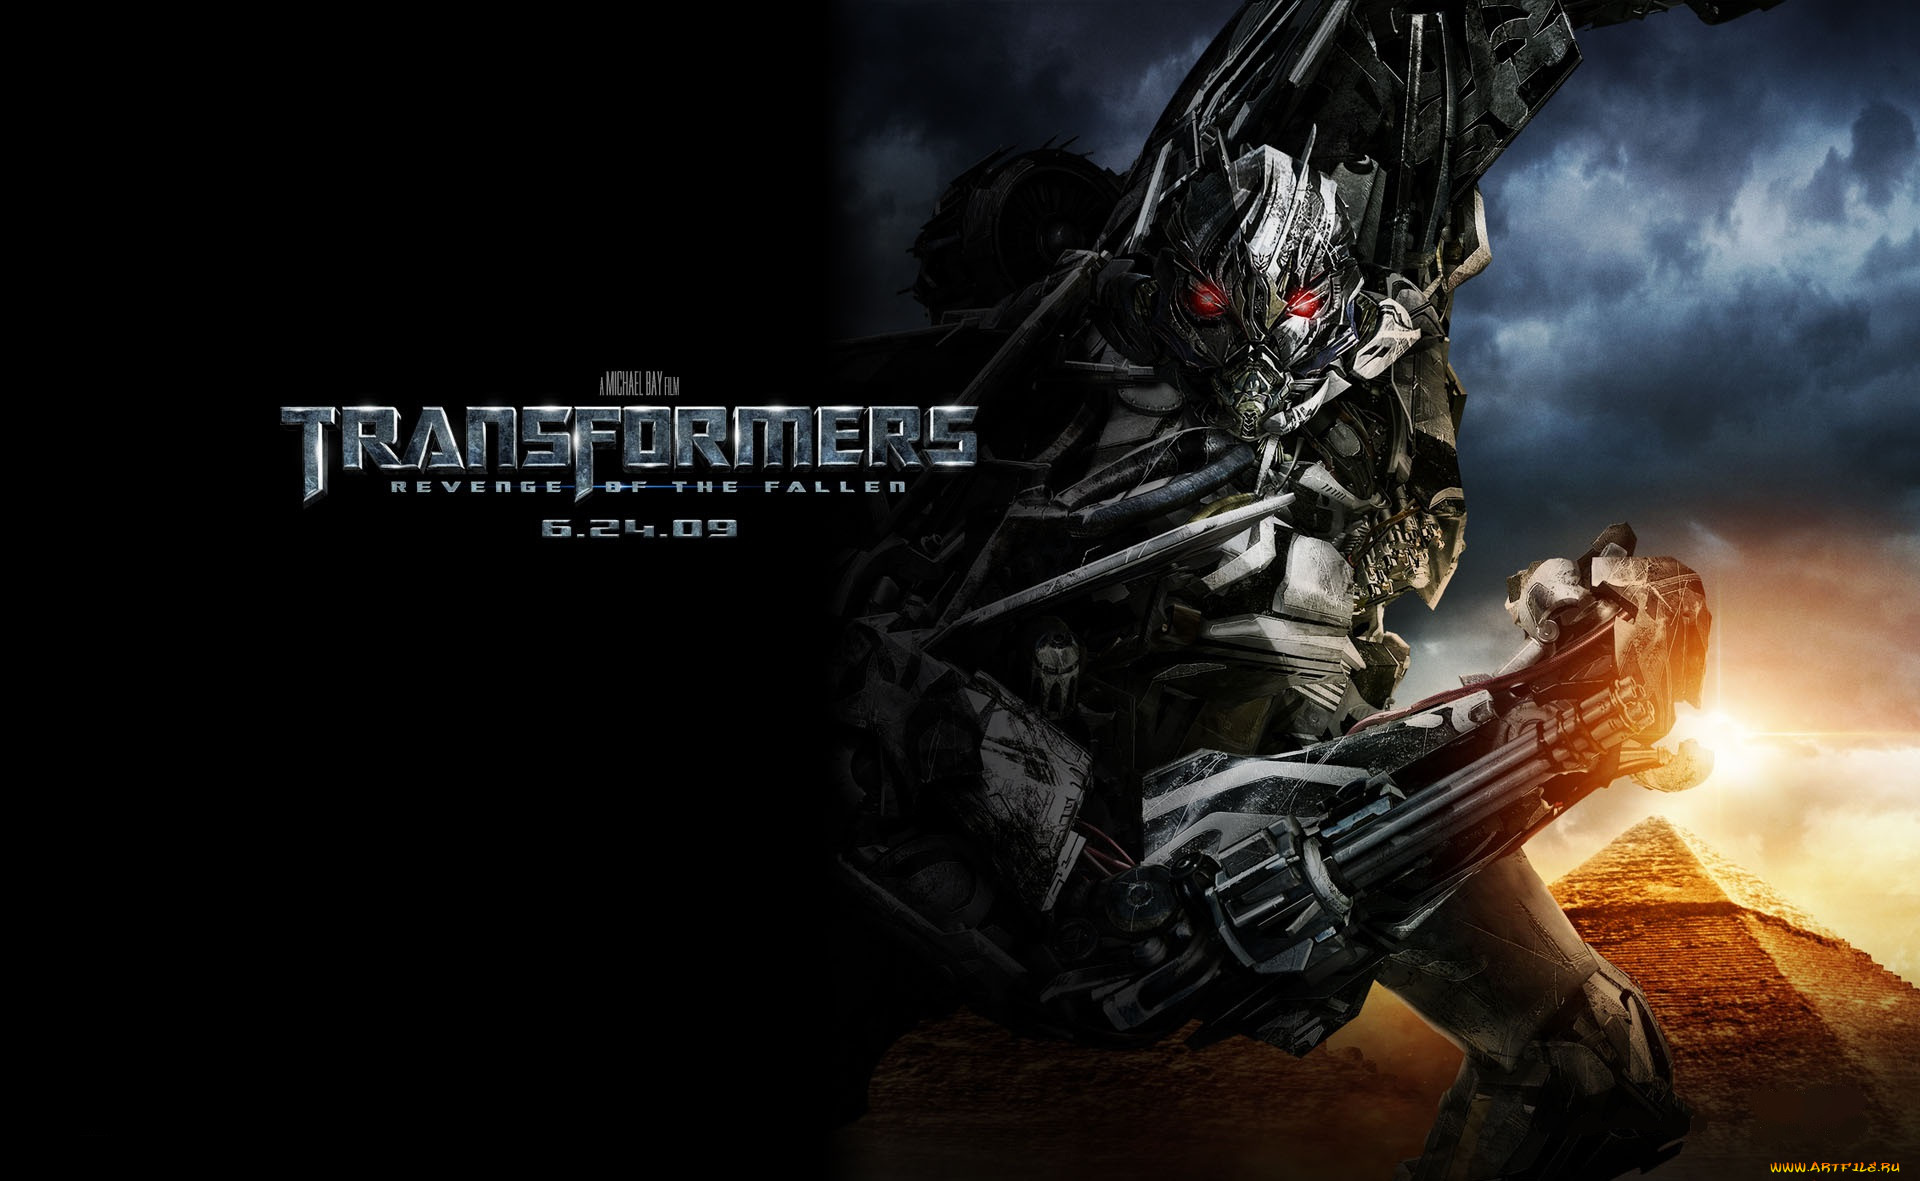  , transformers 2,  revenge of the fallen, , , 